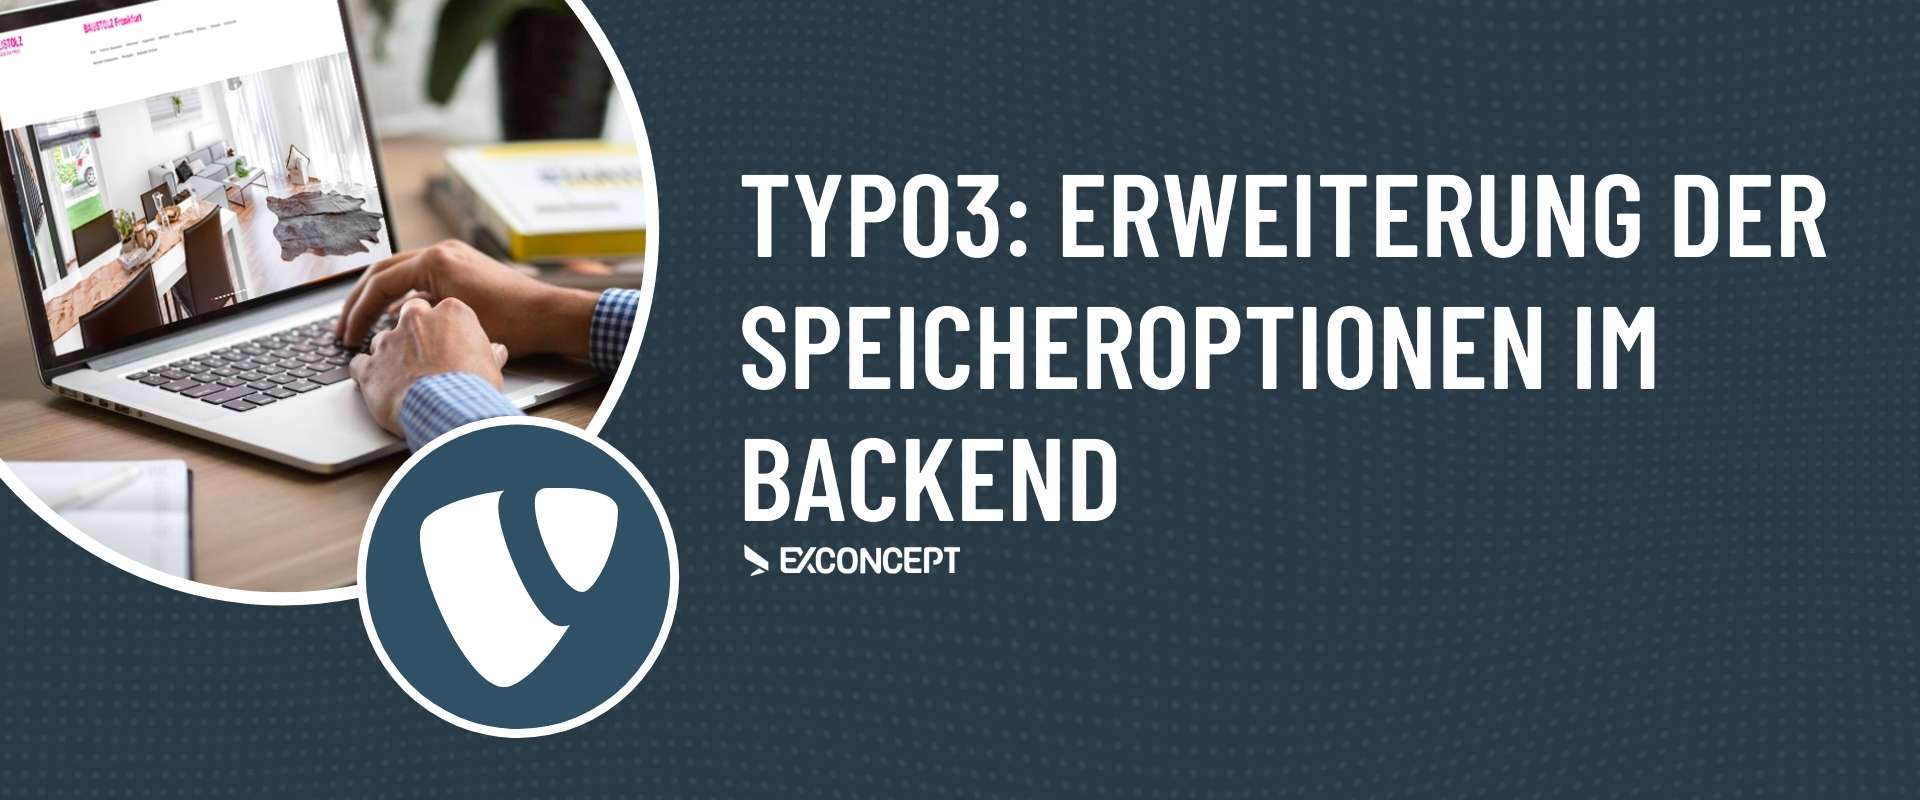 TYPO3-Support erweiterte Speicheroptionen